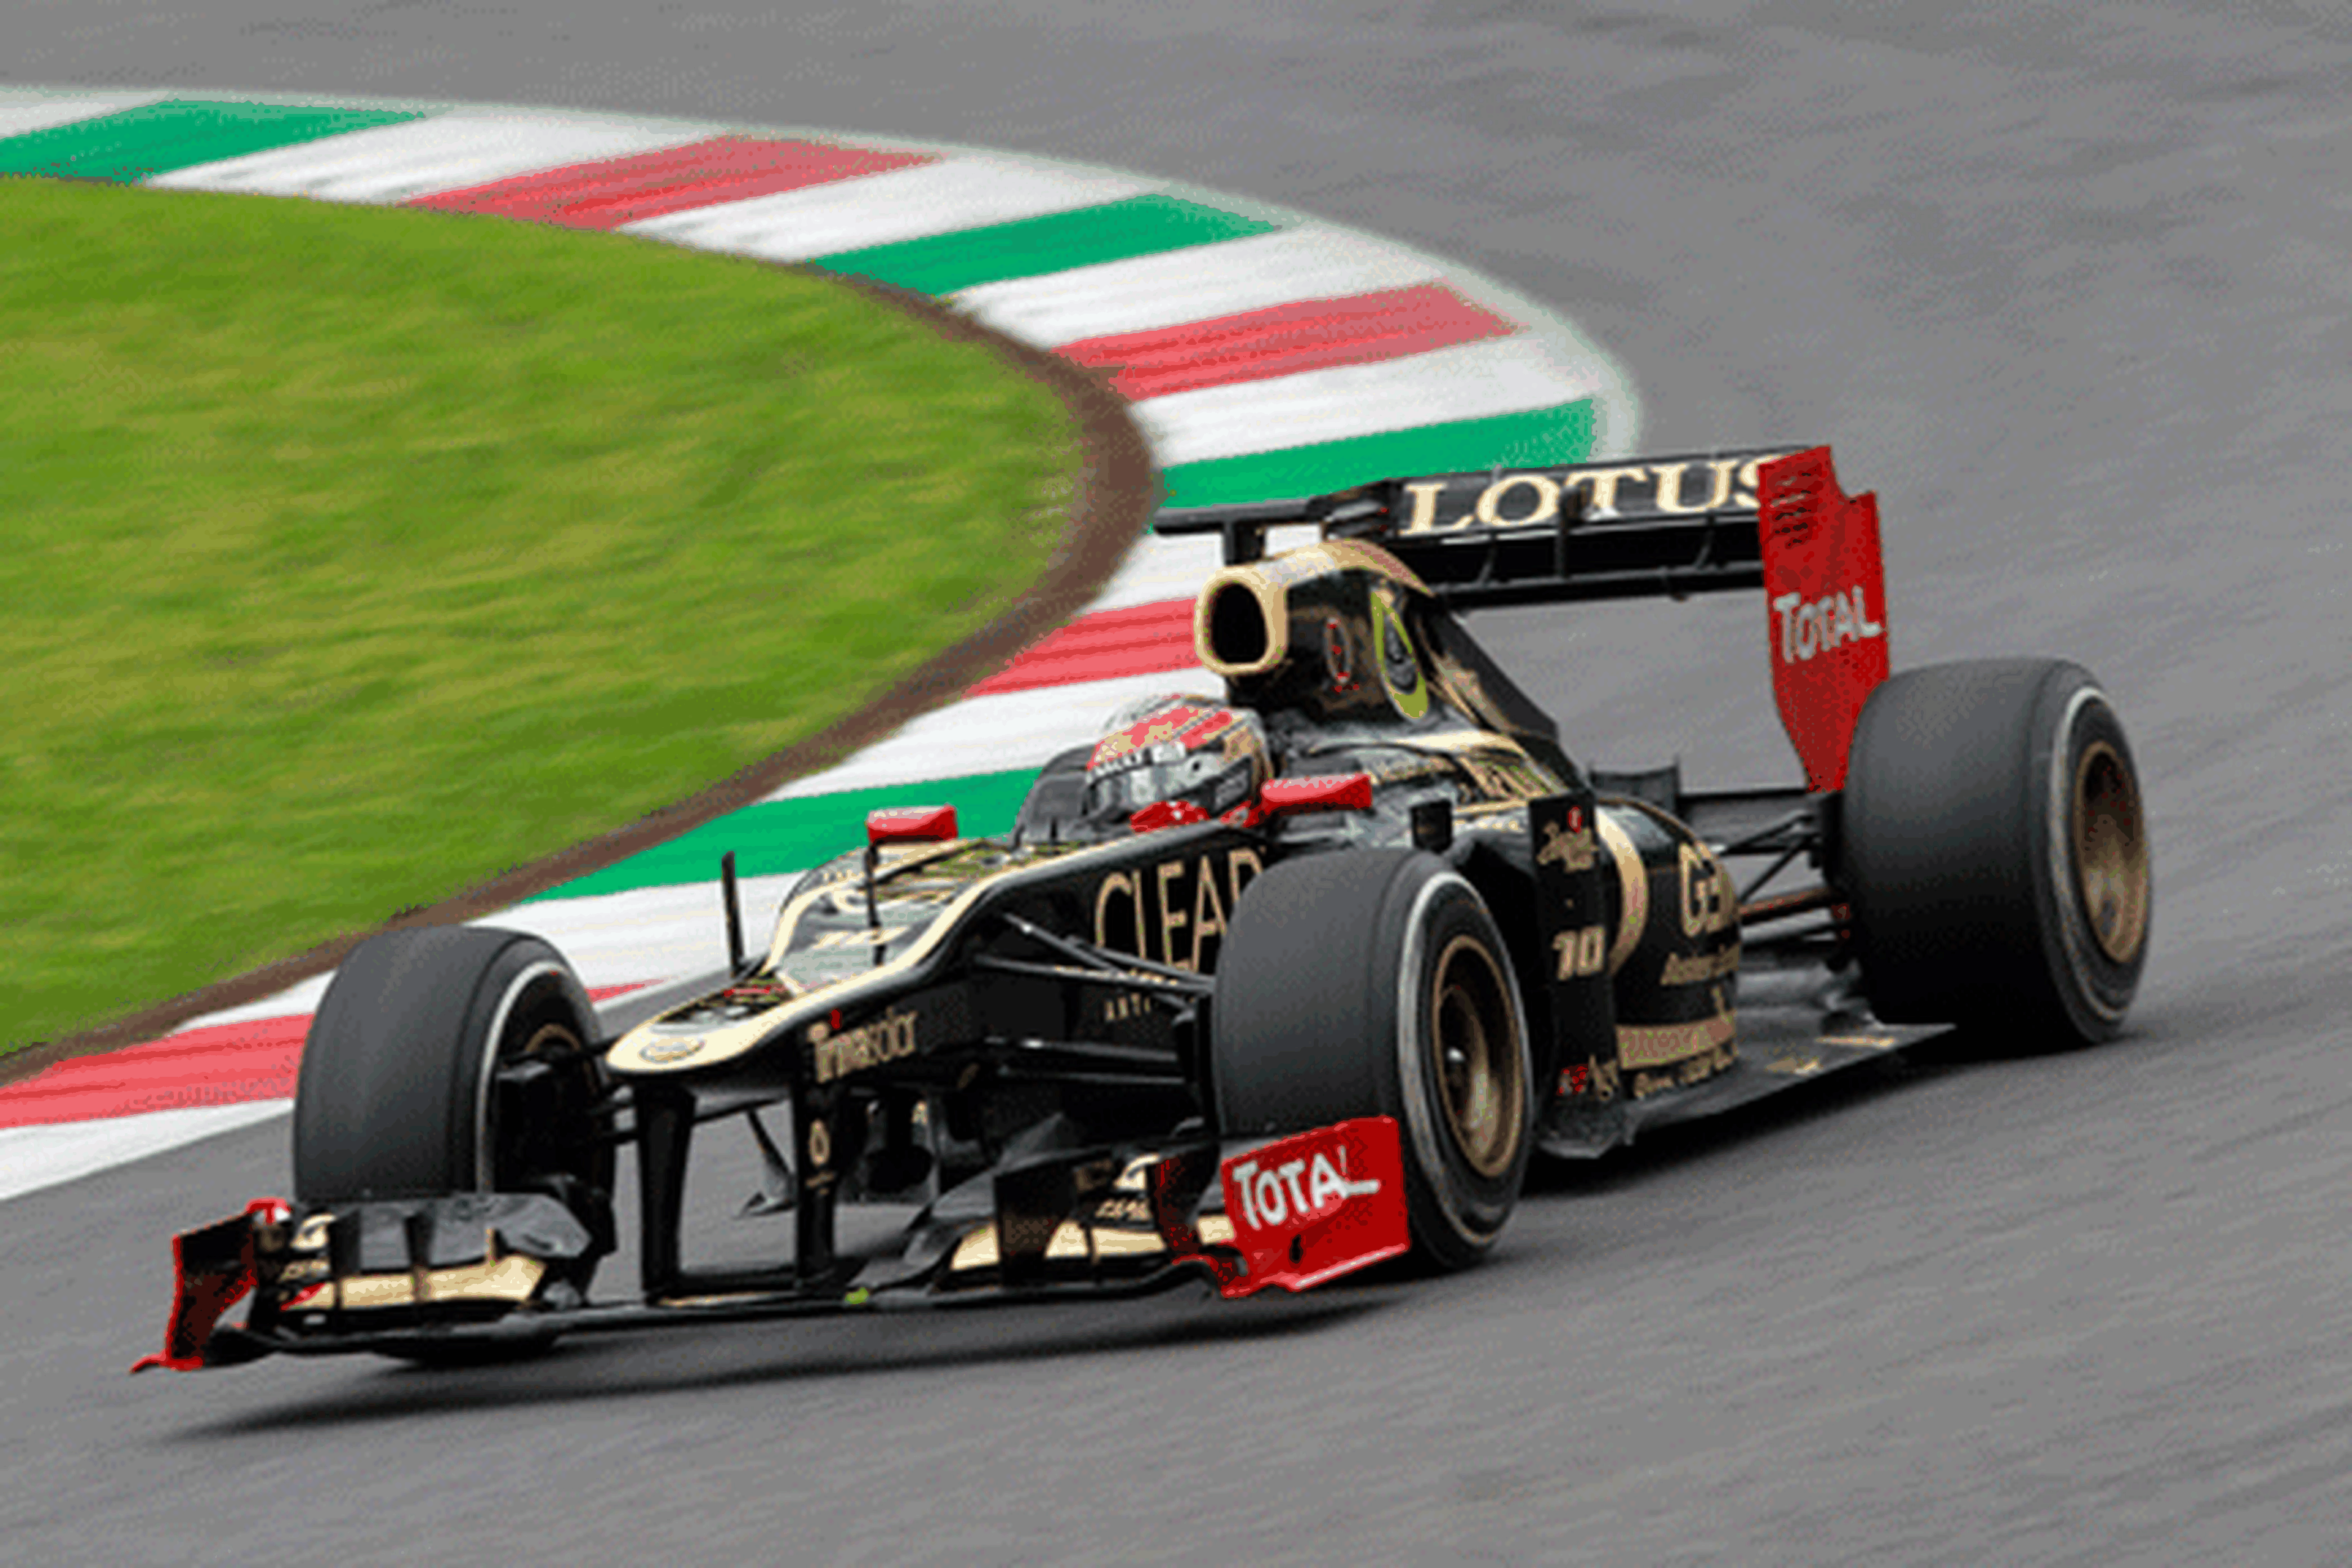 Fórmula 1: Tests Mugello día 3. Grosjean el más rápido